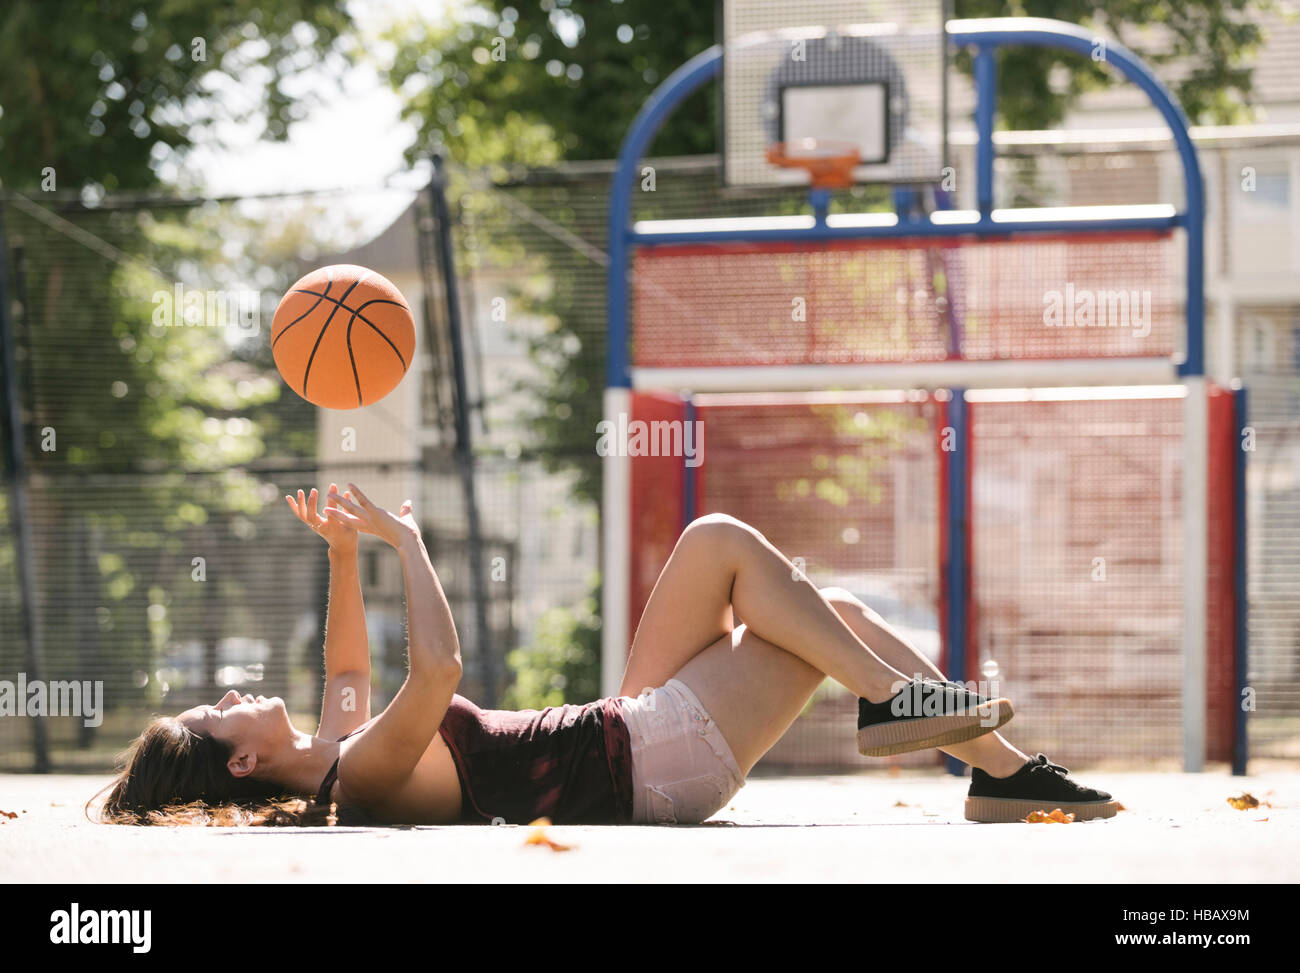 Jeune femme couchée sur un terrain de basket ball lancer Banque D'Images